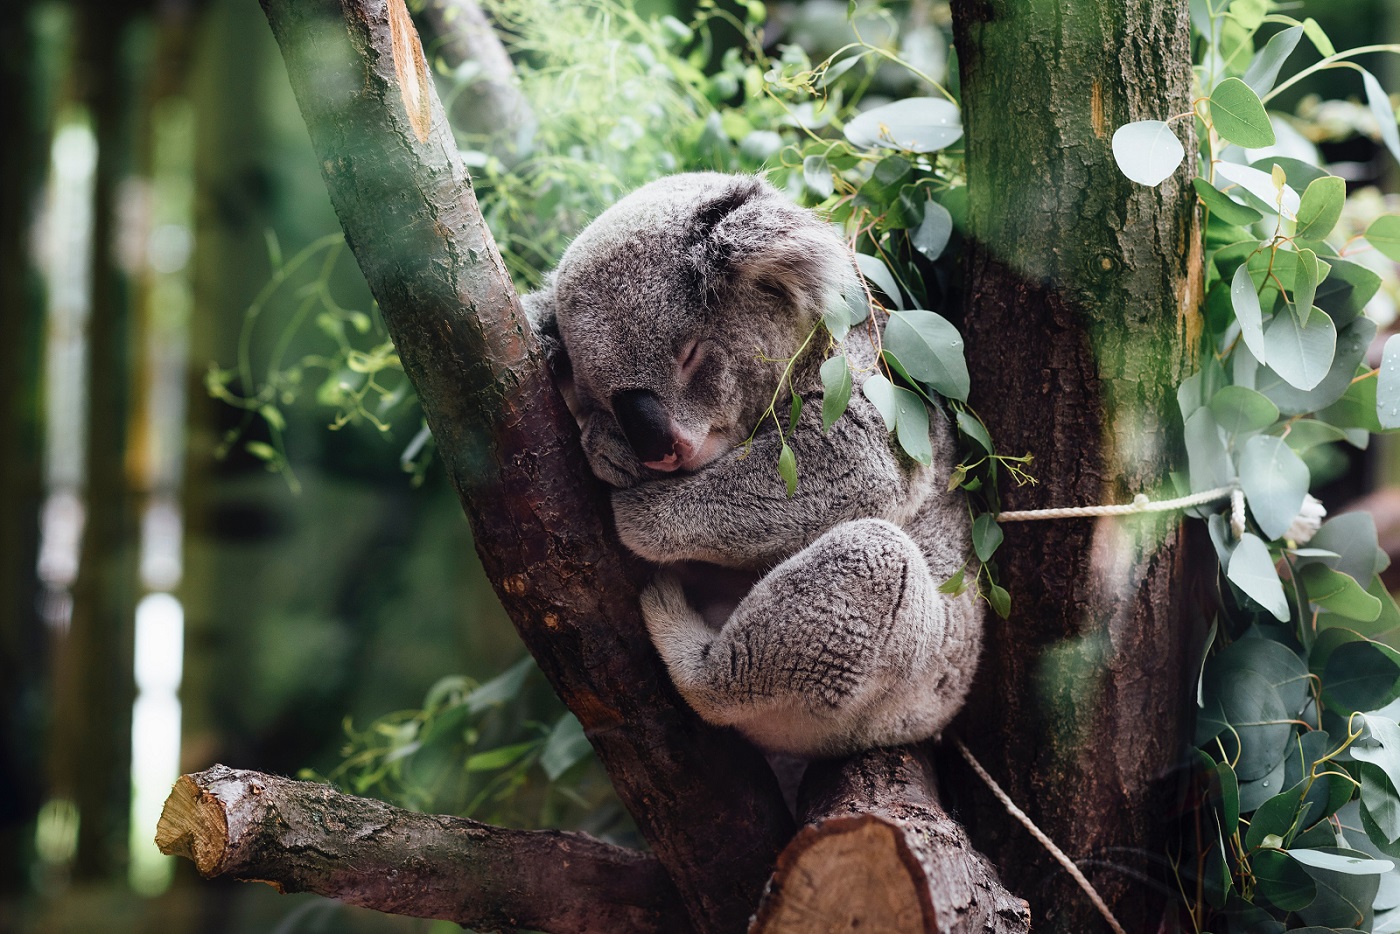 Австралия определи коалите като застрашен вид